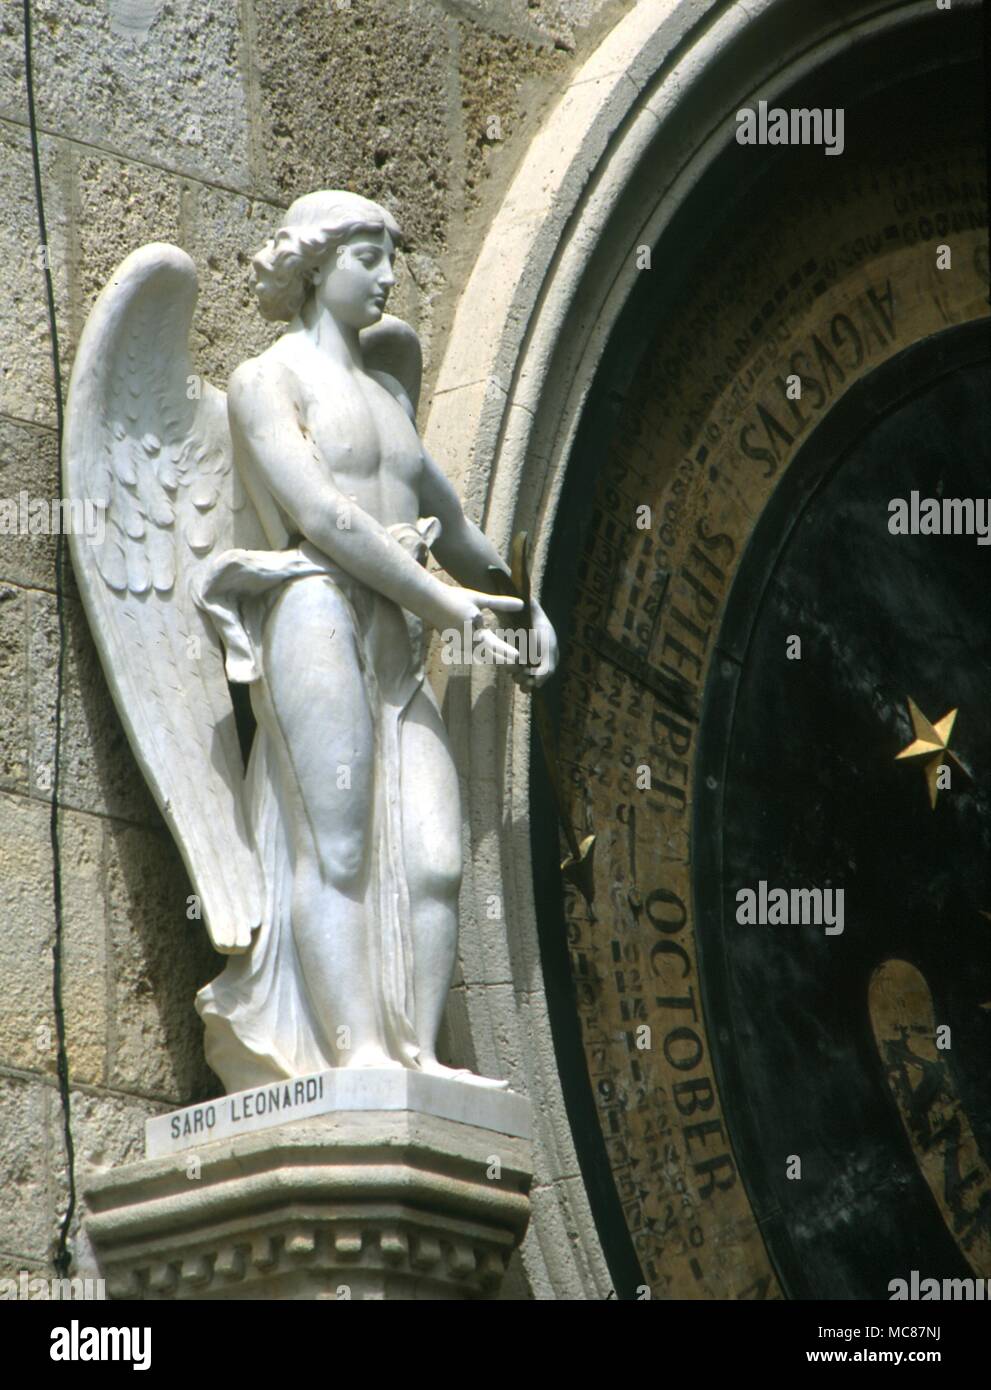 Horlogia und Uhren Detail der Engel (die Zeit) am astrolonomical Glockenturm der Kathedrale von Messina Sizilien ist der Turm mit Zodiac plantary zahlen Wochentage etc. eingerichtet Stockfoto